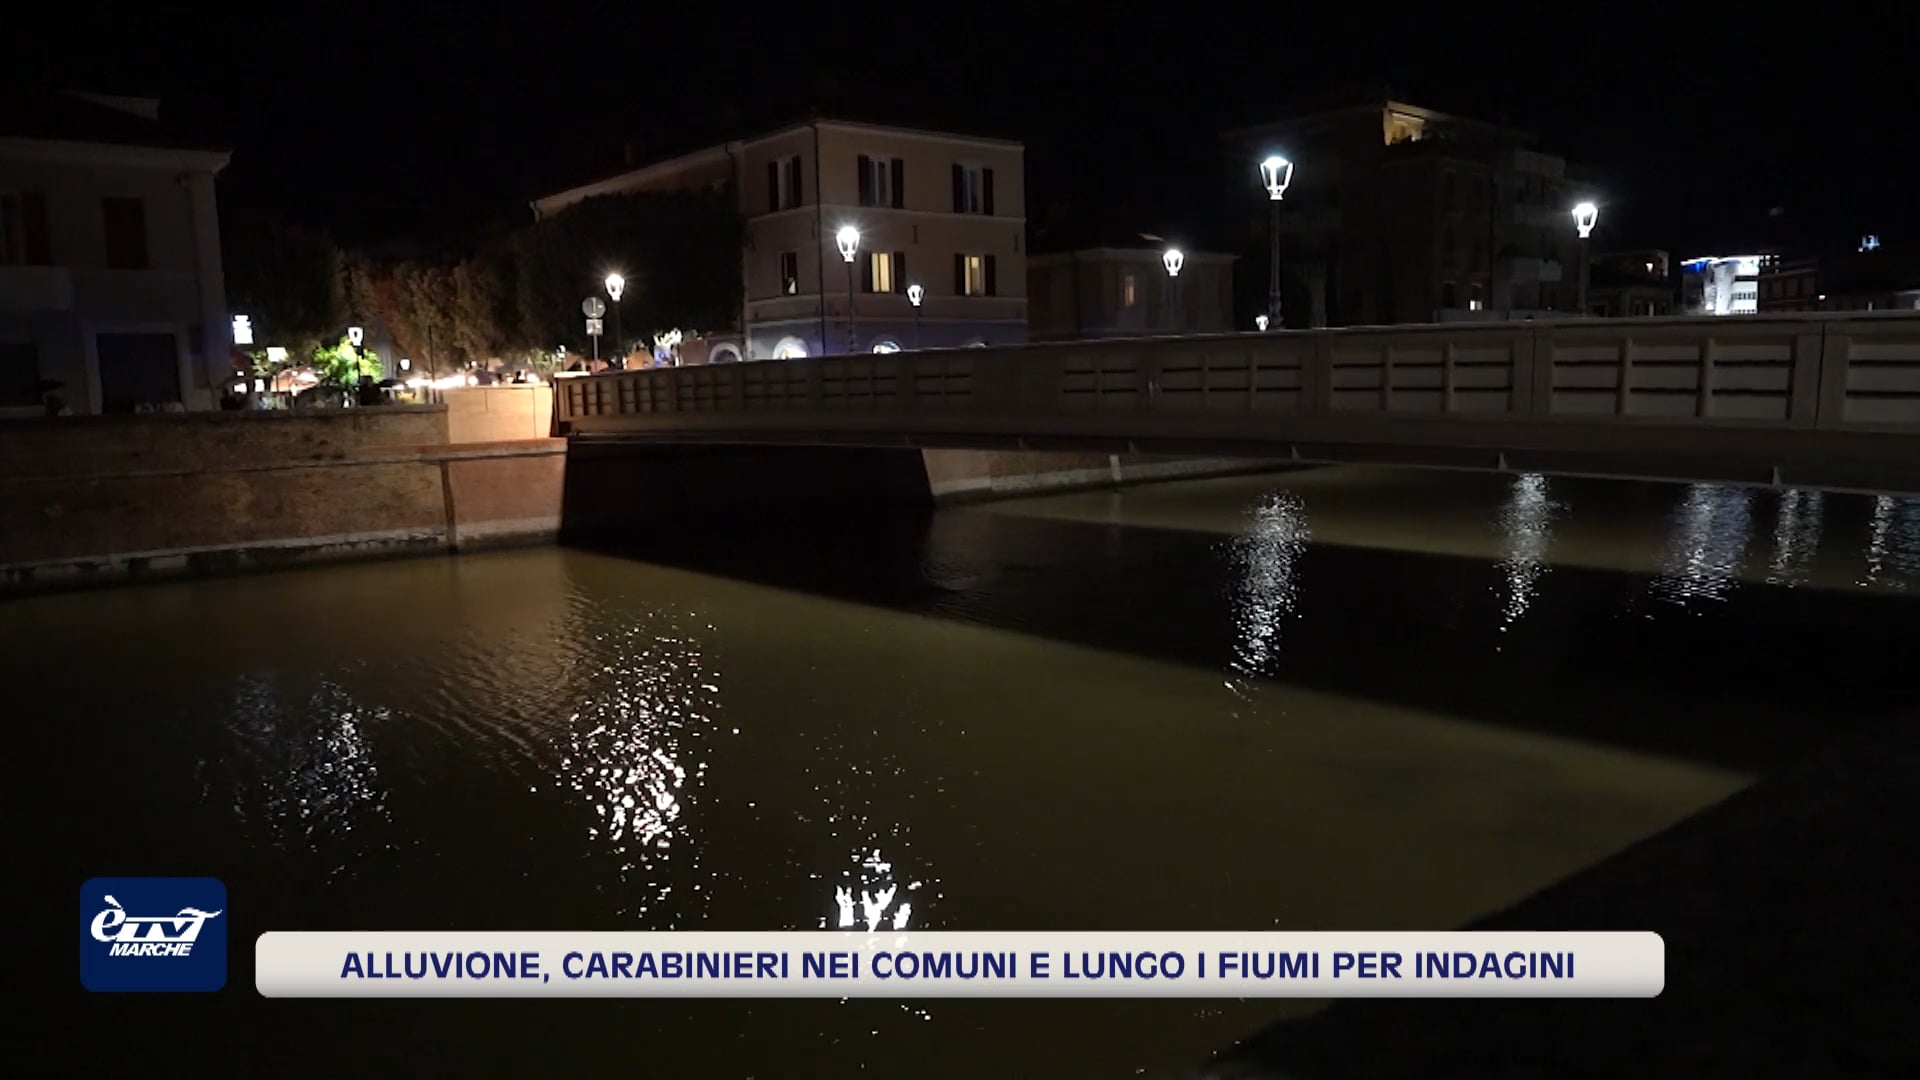 Alluvione, carabinieri nei comuni e lungo i fiumi per indagini - VIDEO